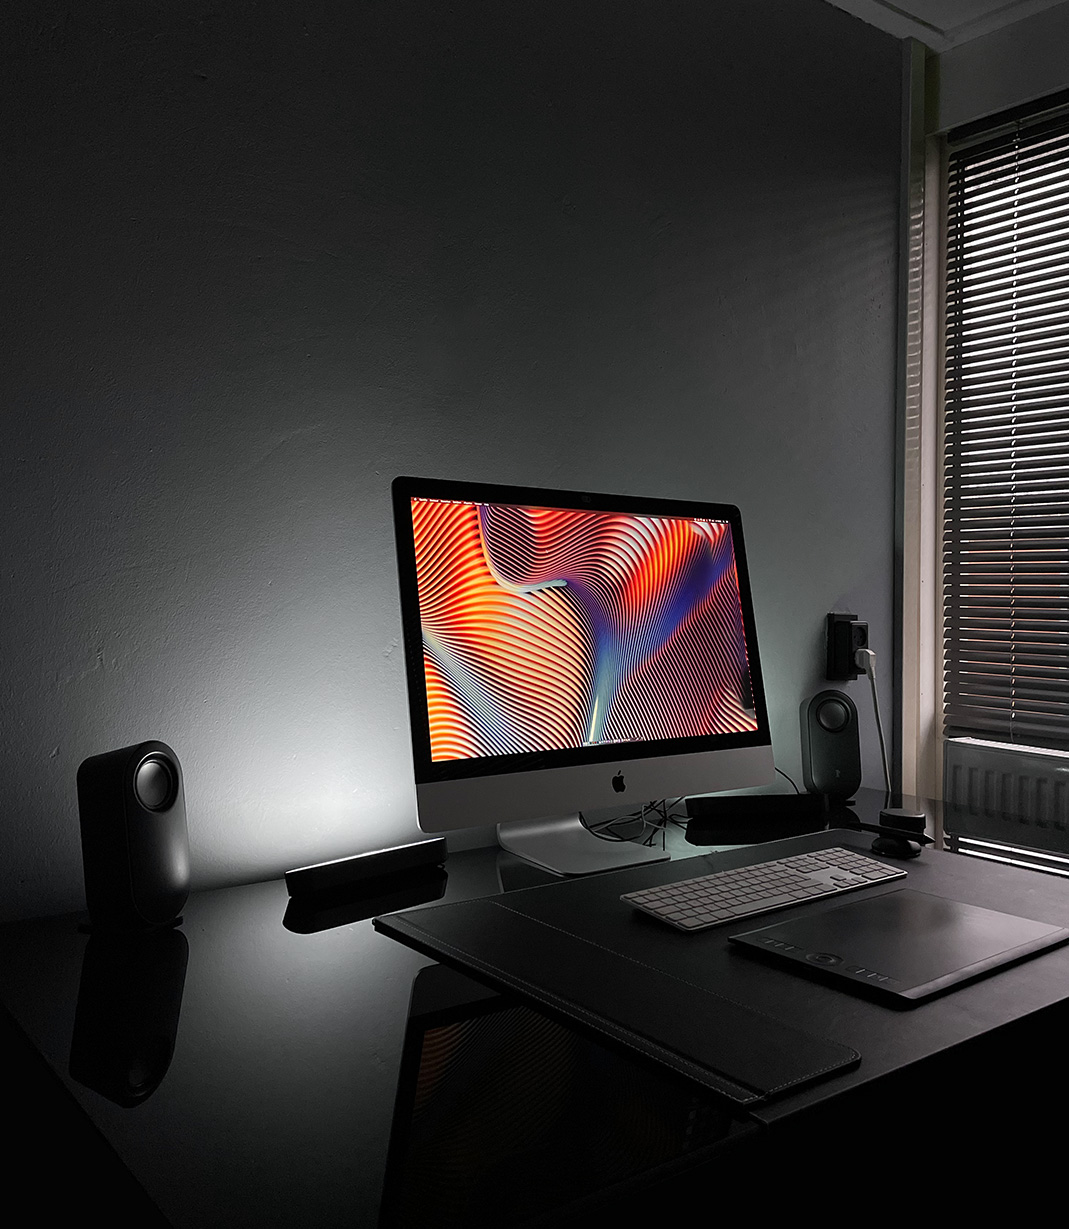 iMac desktop computer in a aesthetic room